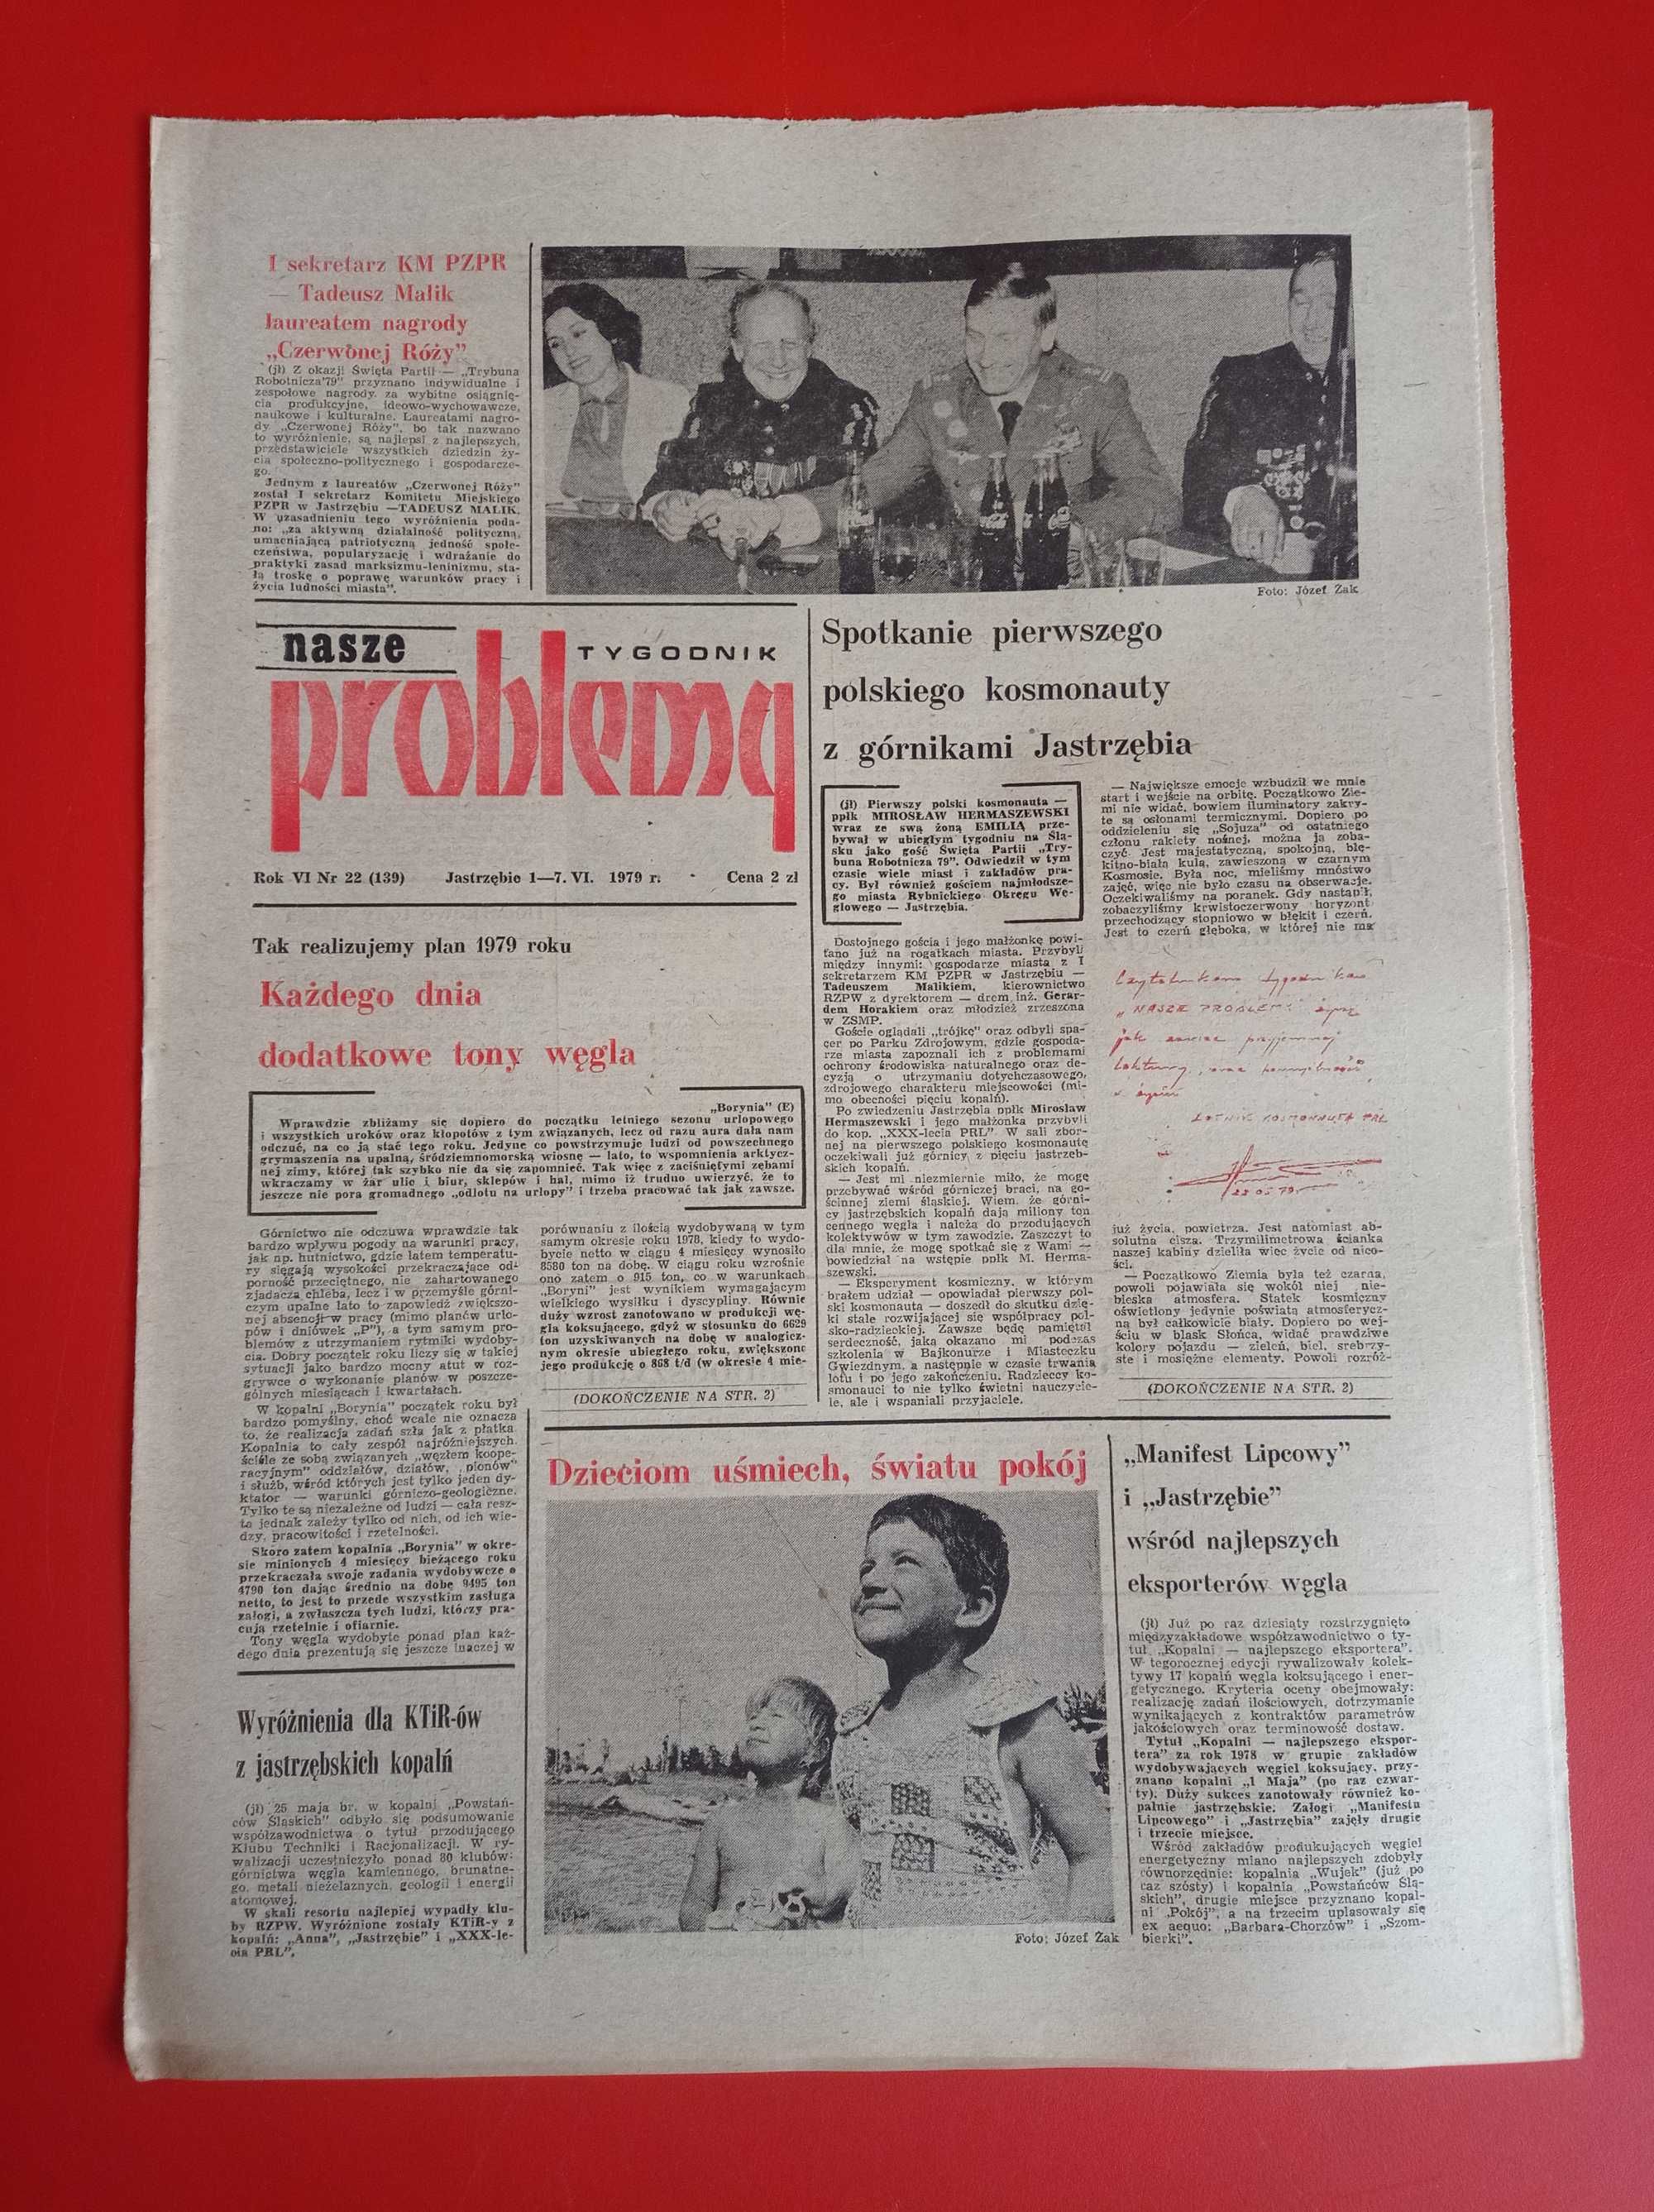 Nasze problemy, Jastrzębie, nr 22, 1-7 czerwca 1979